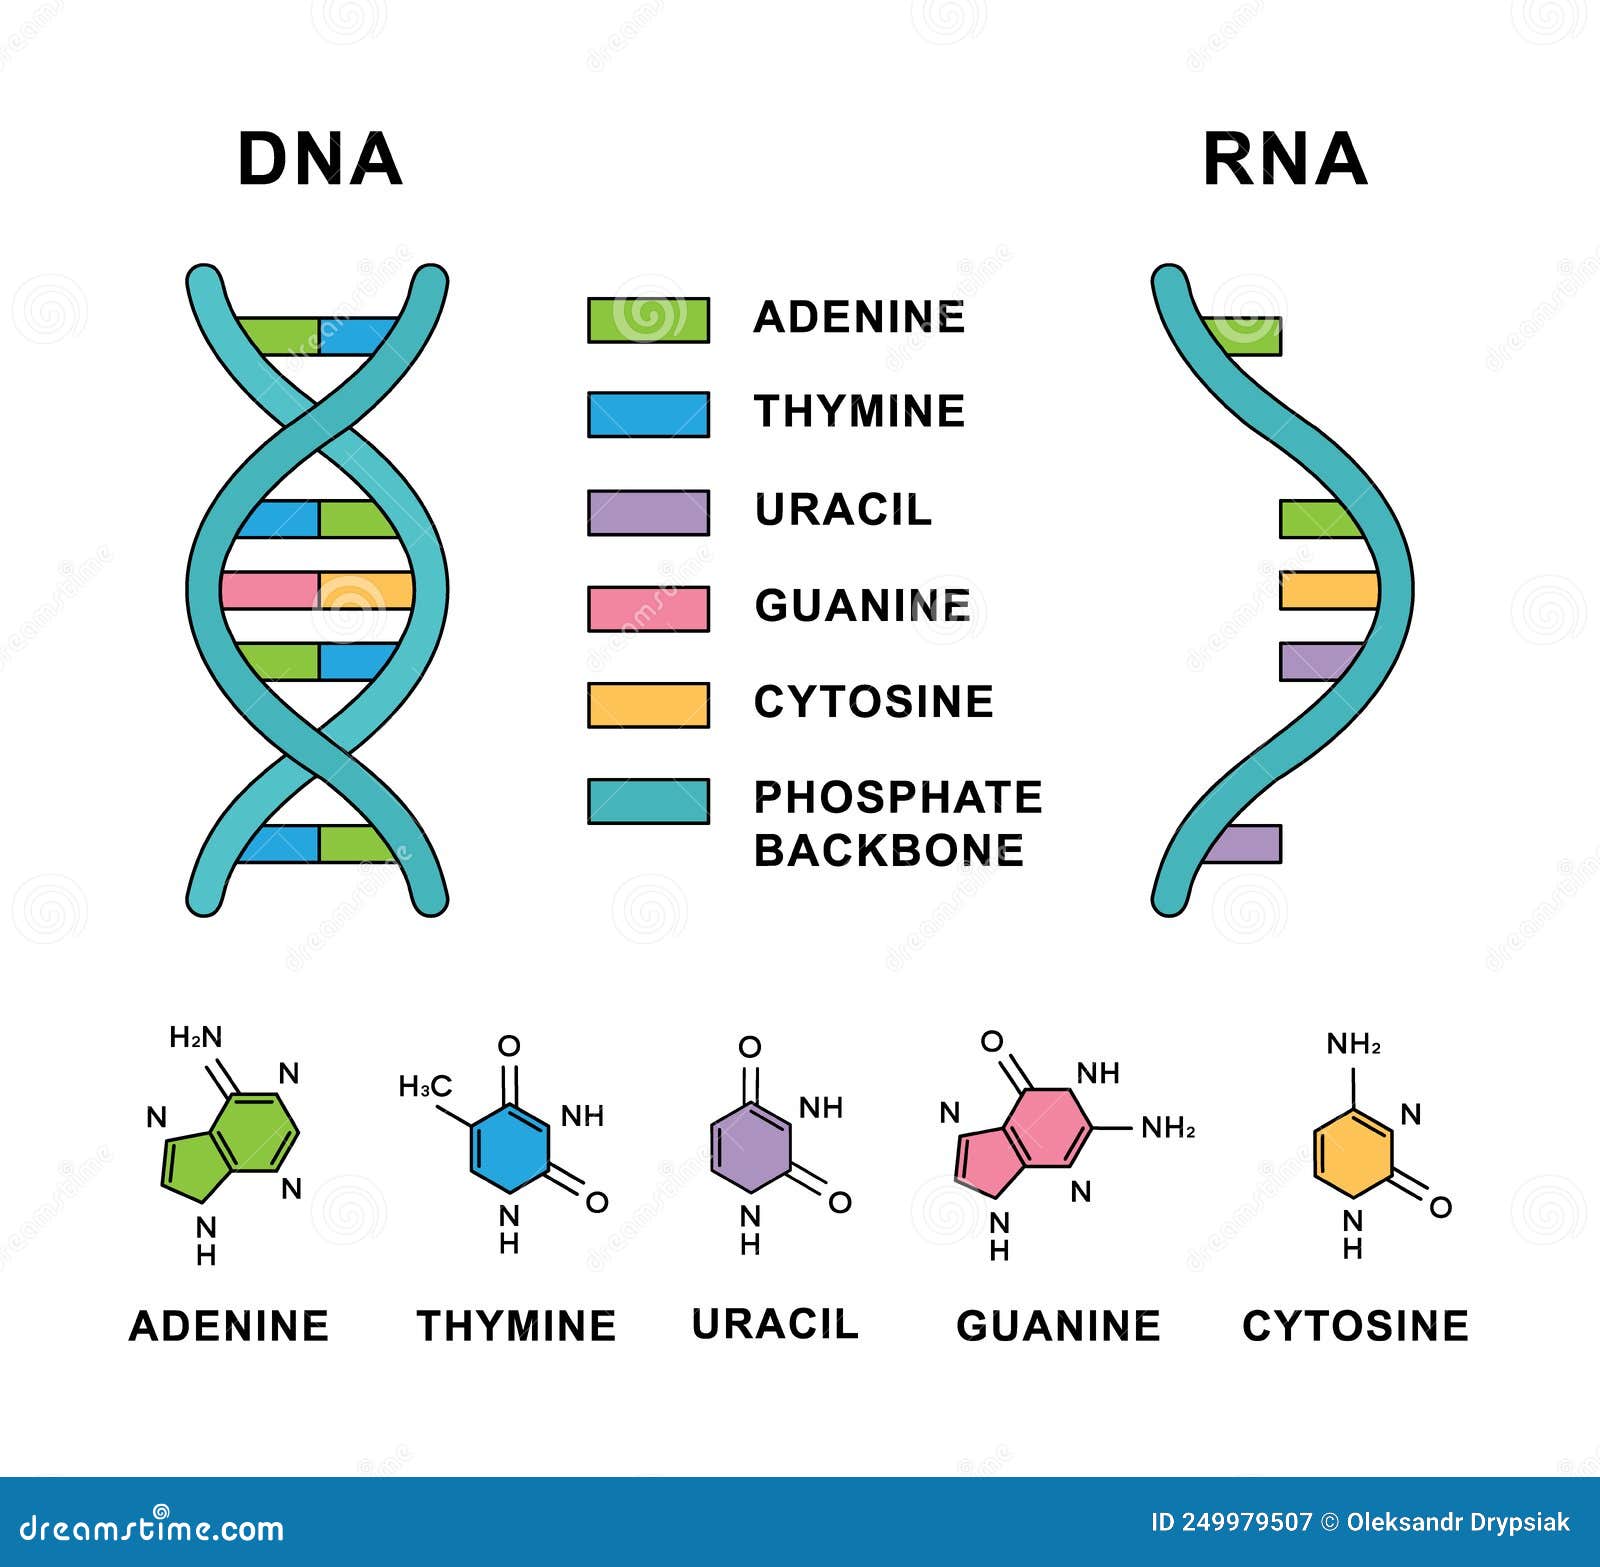 Рнк аденин гуанин. Аденин гуанин цитозин Тимин урацил. РНК аденин урацил гуанин. Тимин гуанин цитозин Тимин РНК И ДНК. ДНК И РНК аденин Тимин гуанин цитозин урацил.